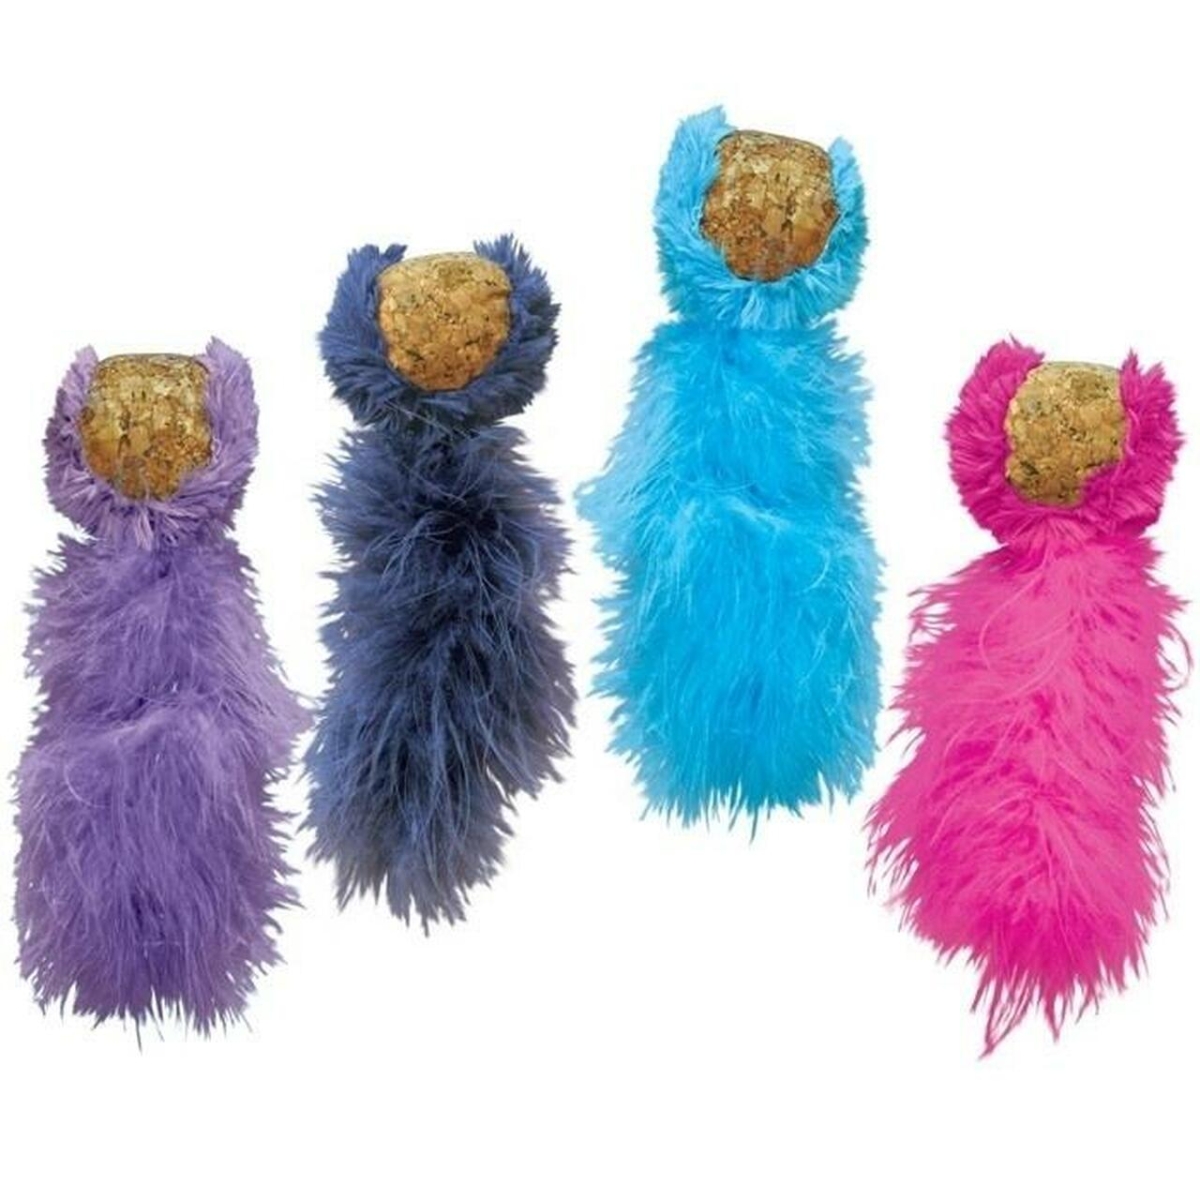 Kong Cat Cork Ball naistenõgest sisaldav mänguasi kassidele